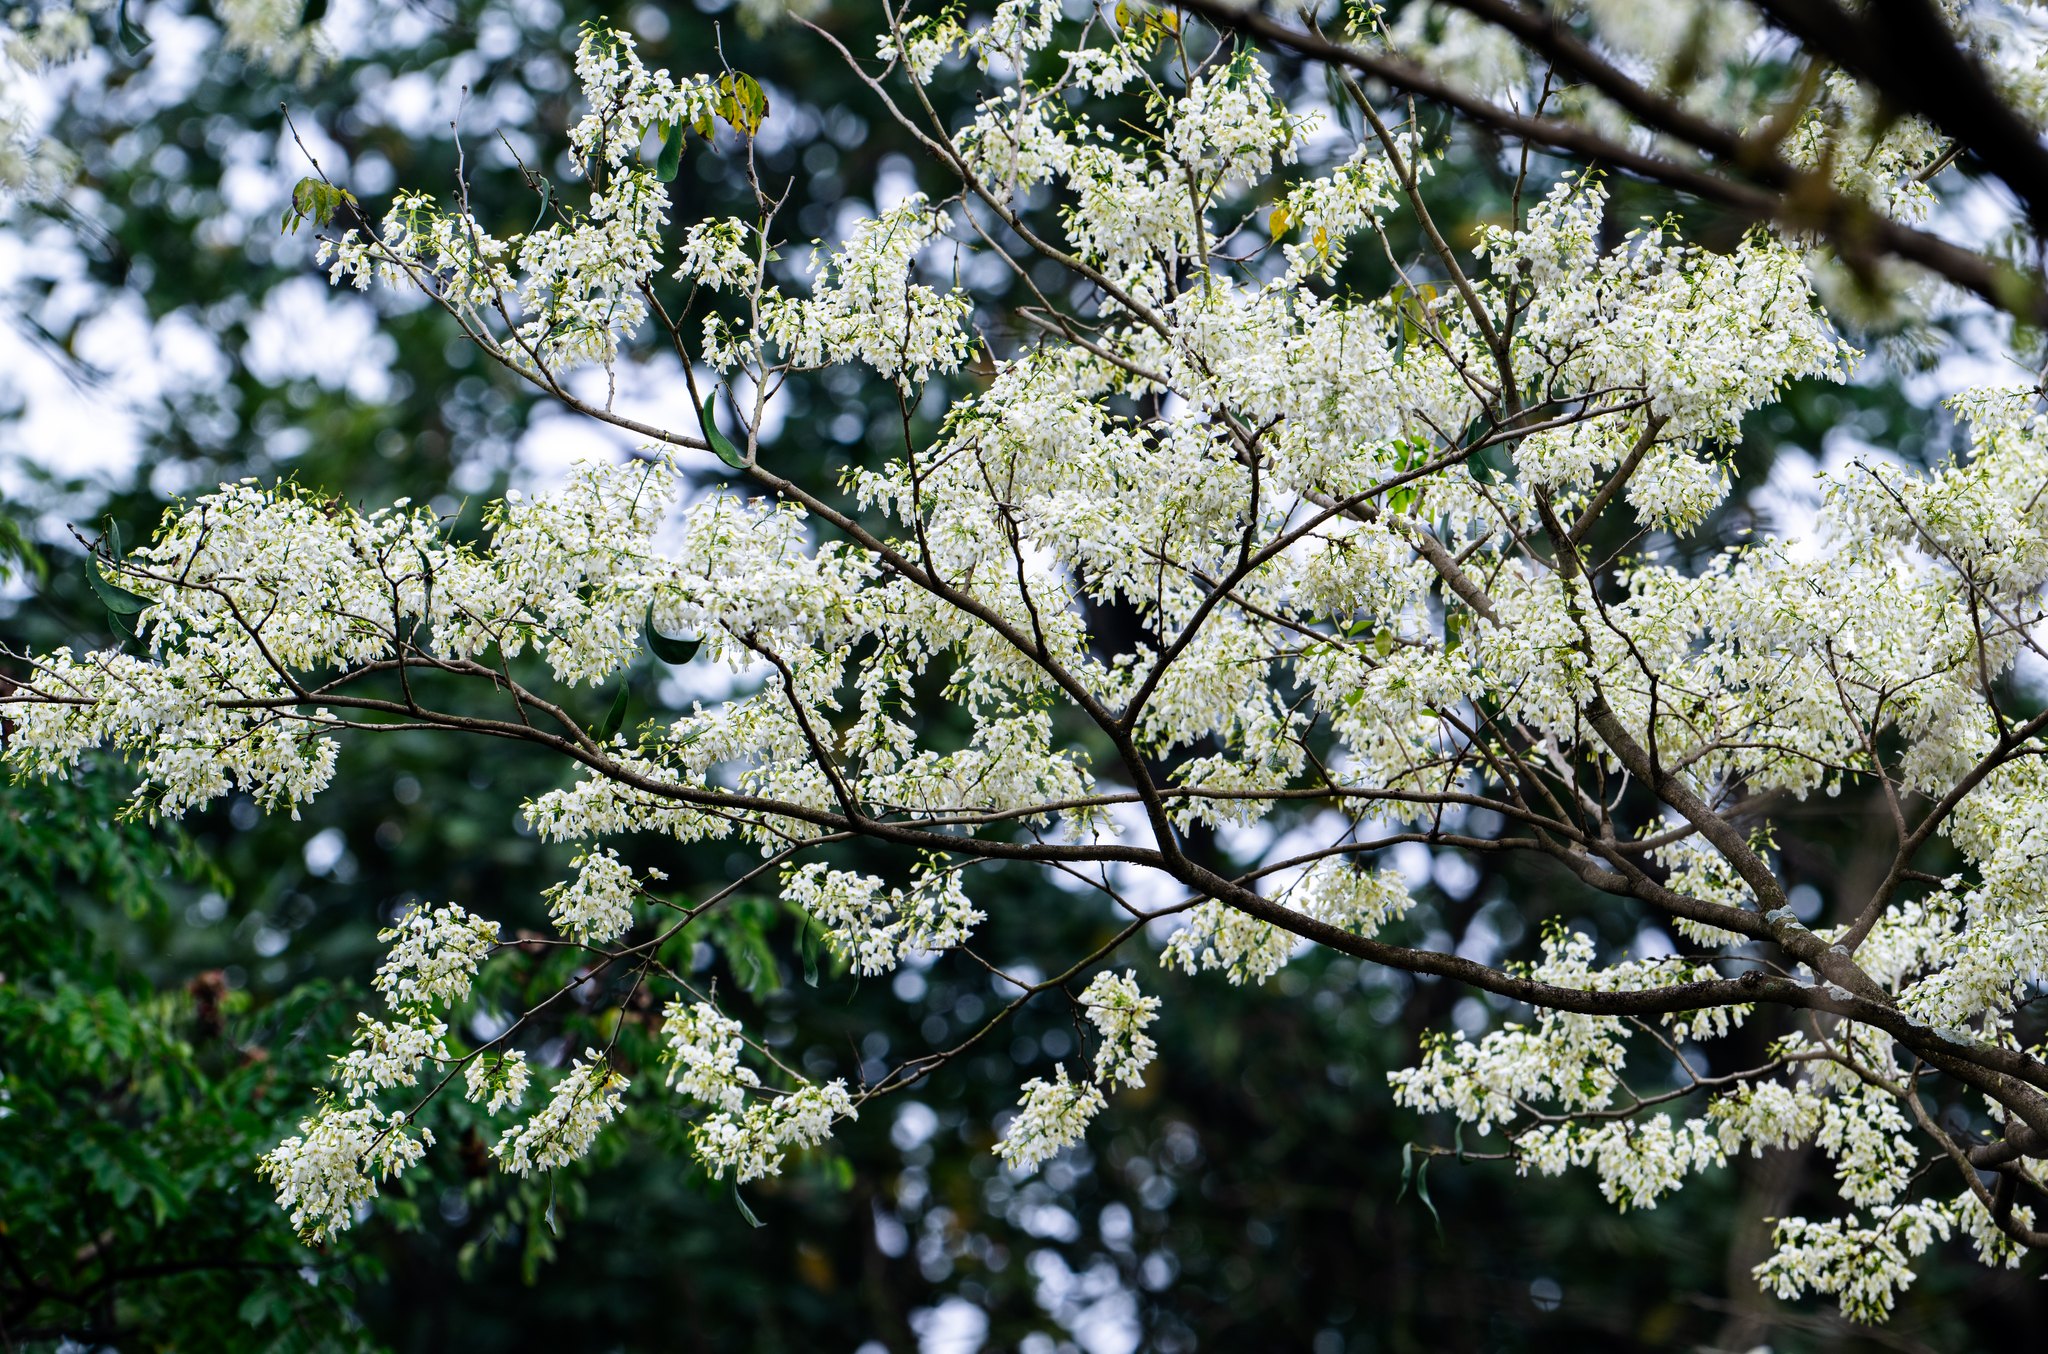 Những cây hoa sưa khoe vẻ đẹp tinh khôi, vươn cao trên nền trời xanh thẳm. Những chùm hoa nhỏ bé cứ sáng bừng trên từng con phố, hút mọi ánh nhìn của bất kỳ ai ngang qua. Ảnh: Toàn Quang